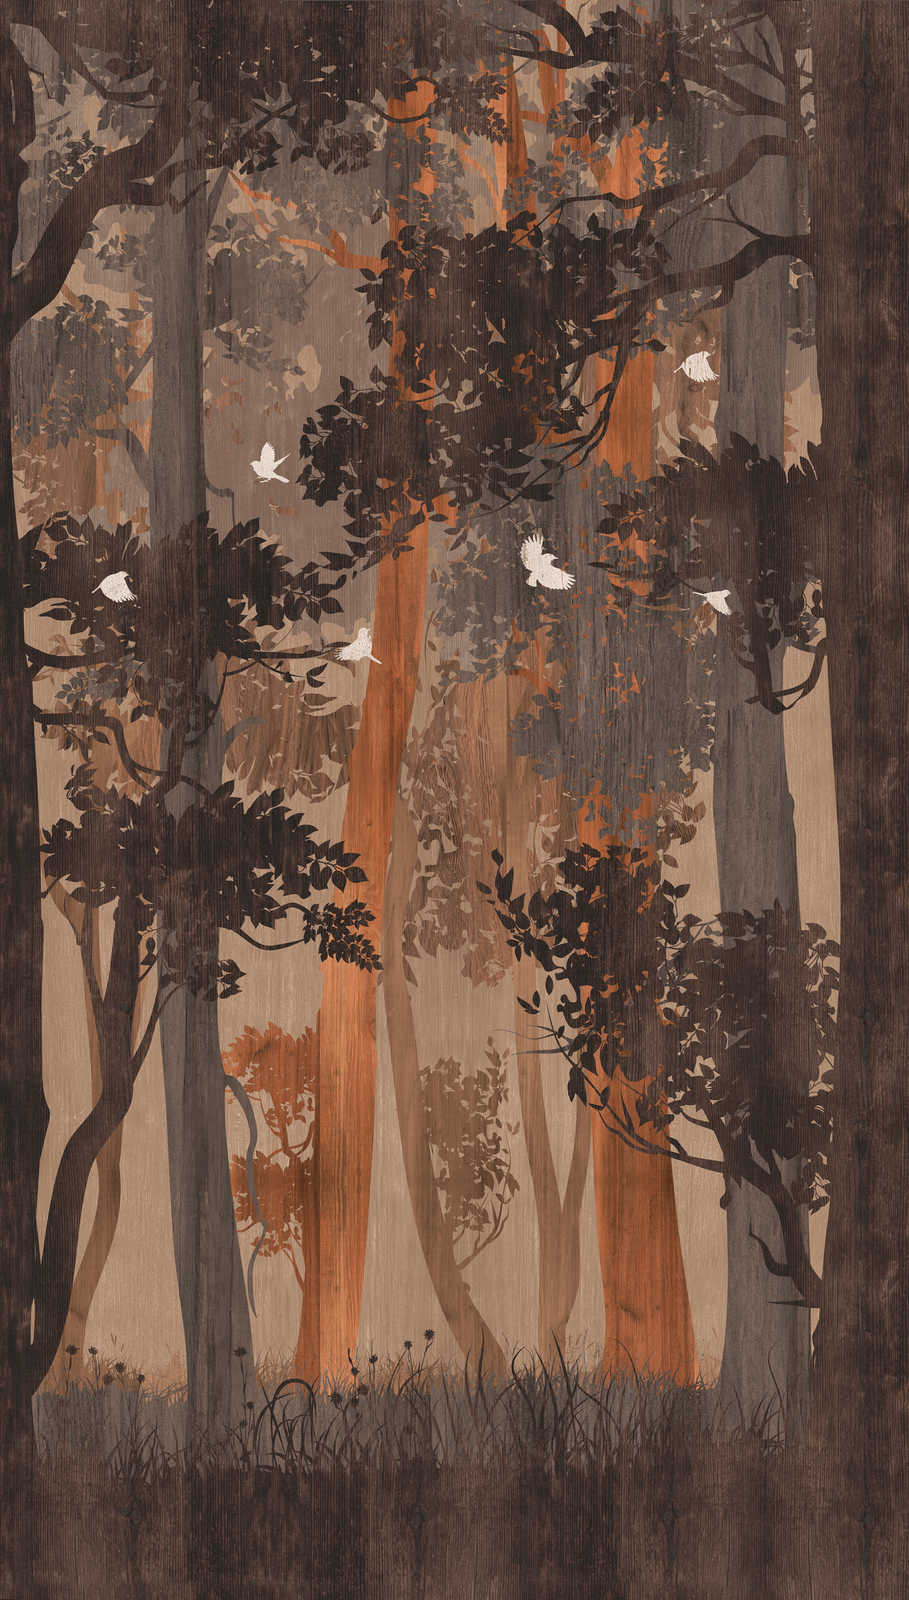             Papel pintado no tejido motivo bosque en colores otoñales con pájaros - azul, beige, naranja
        